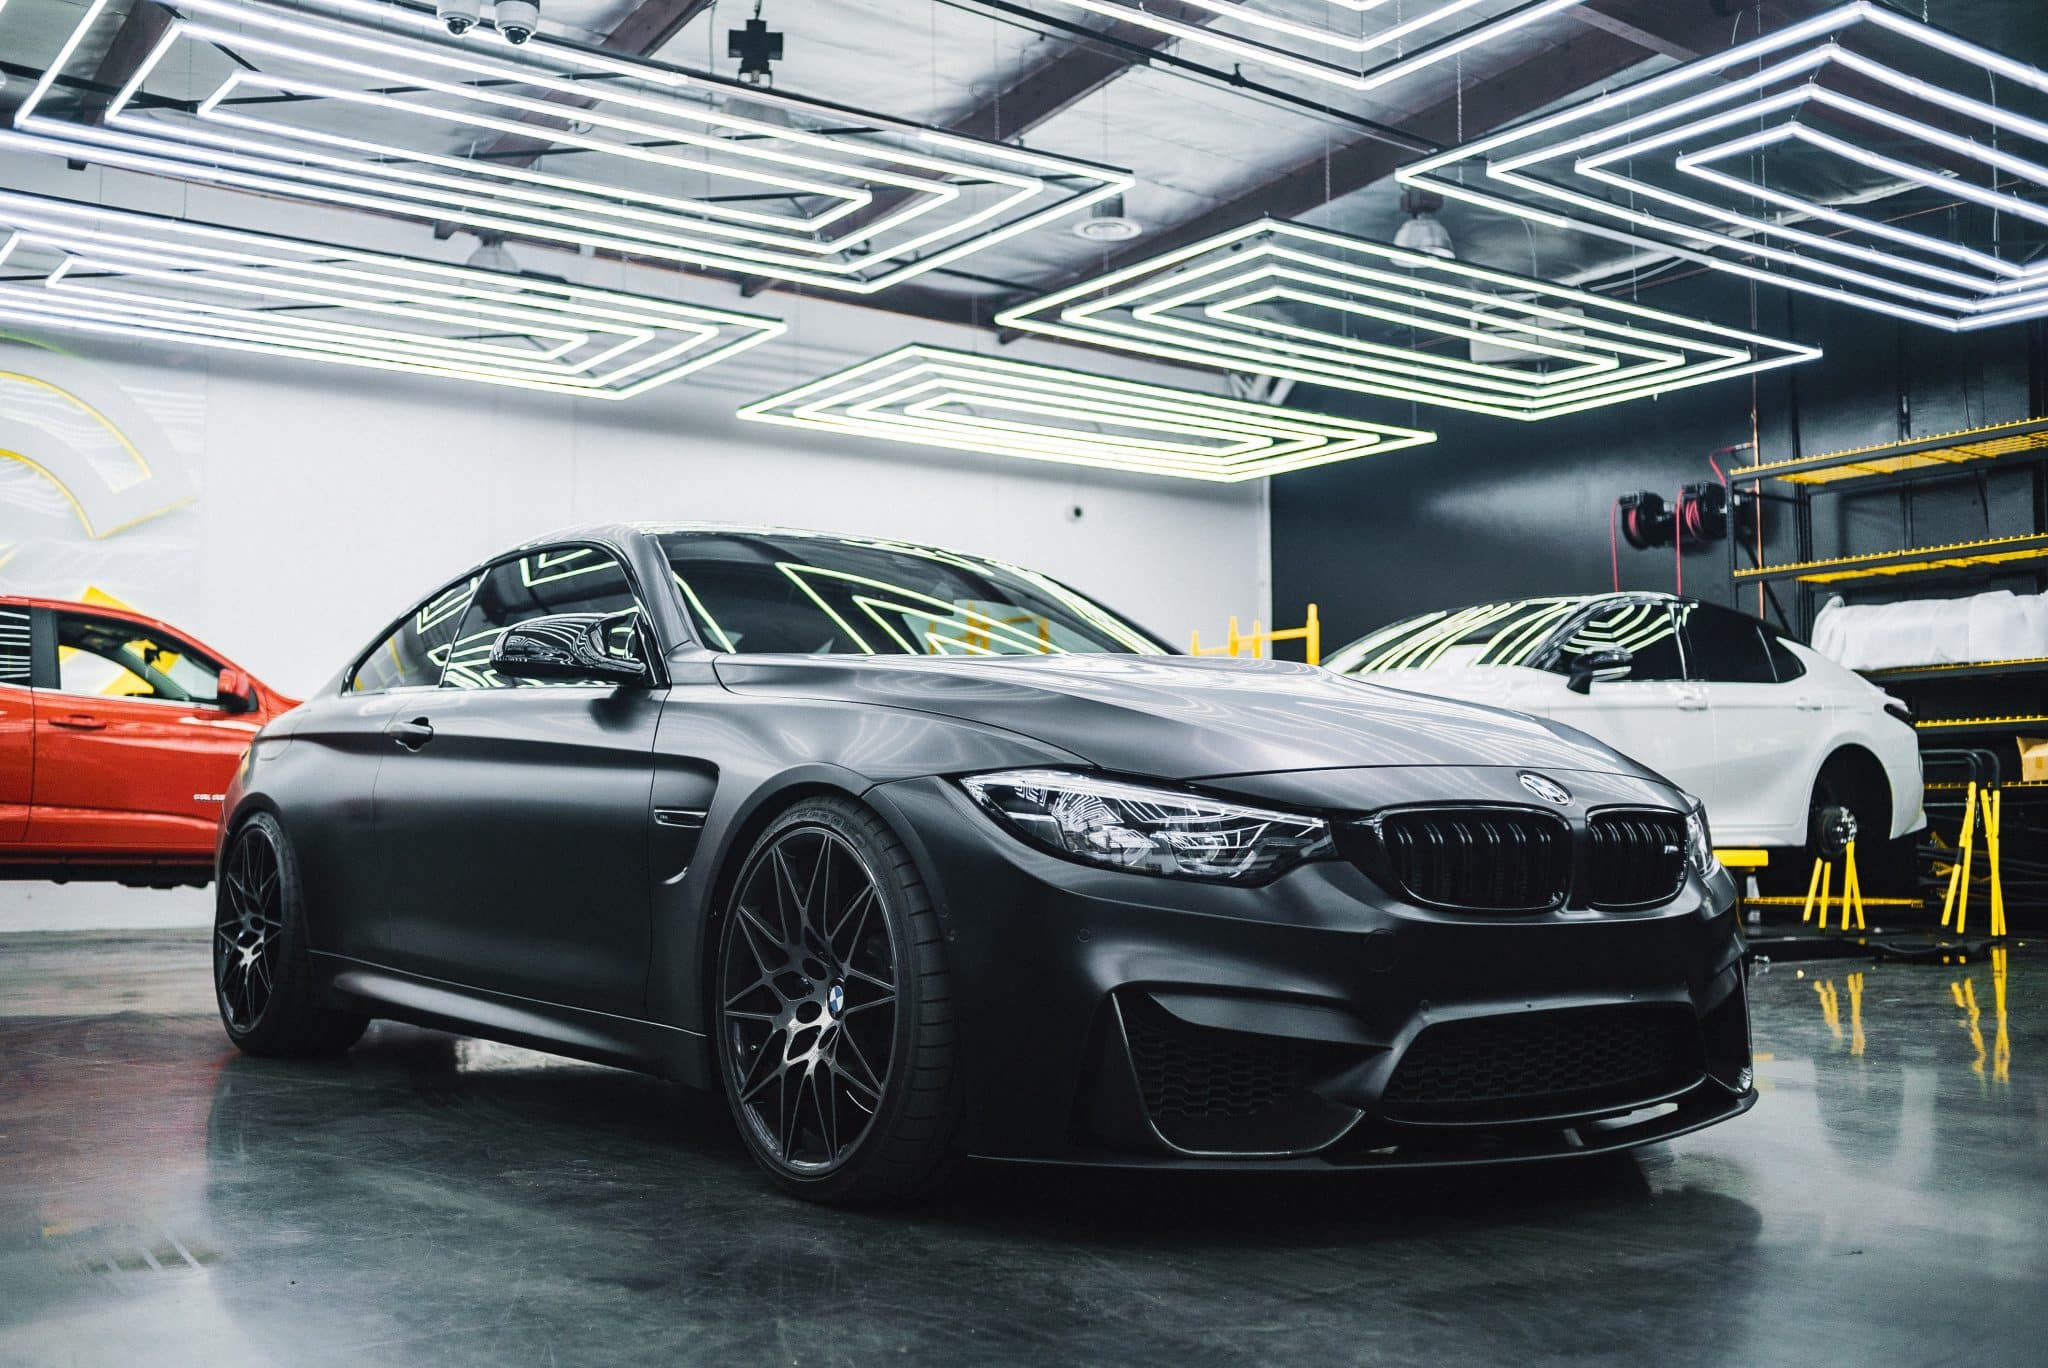 A BMW car in a garage following a BMW MOT test with Autobahn